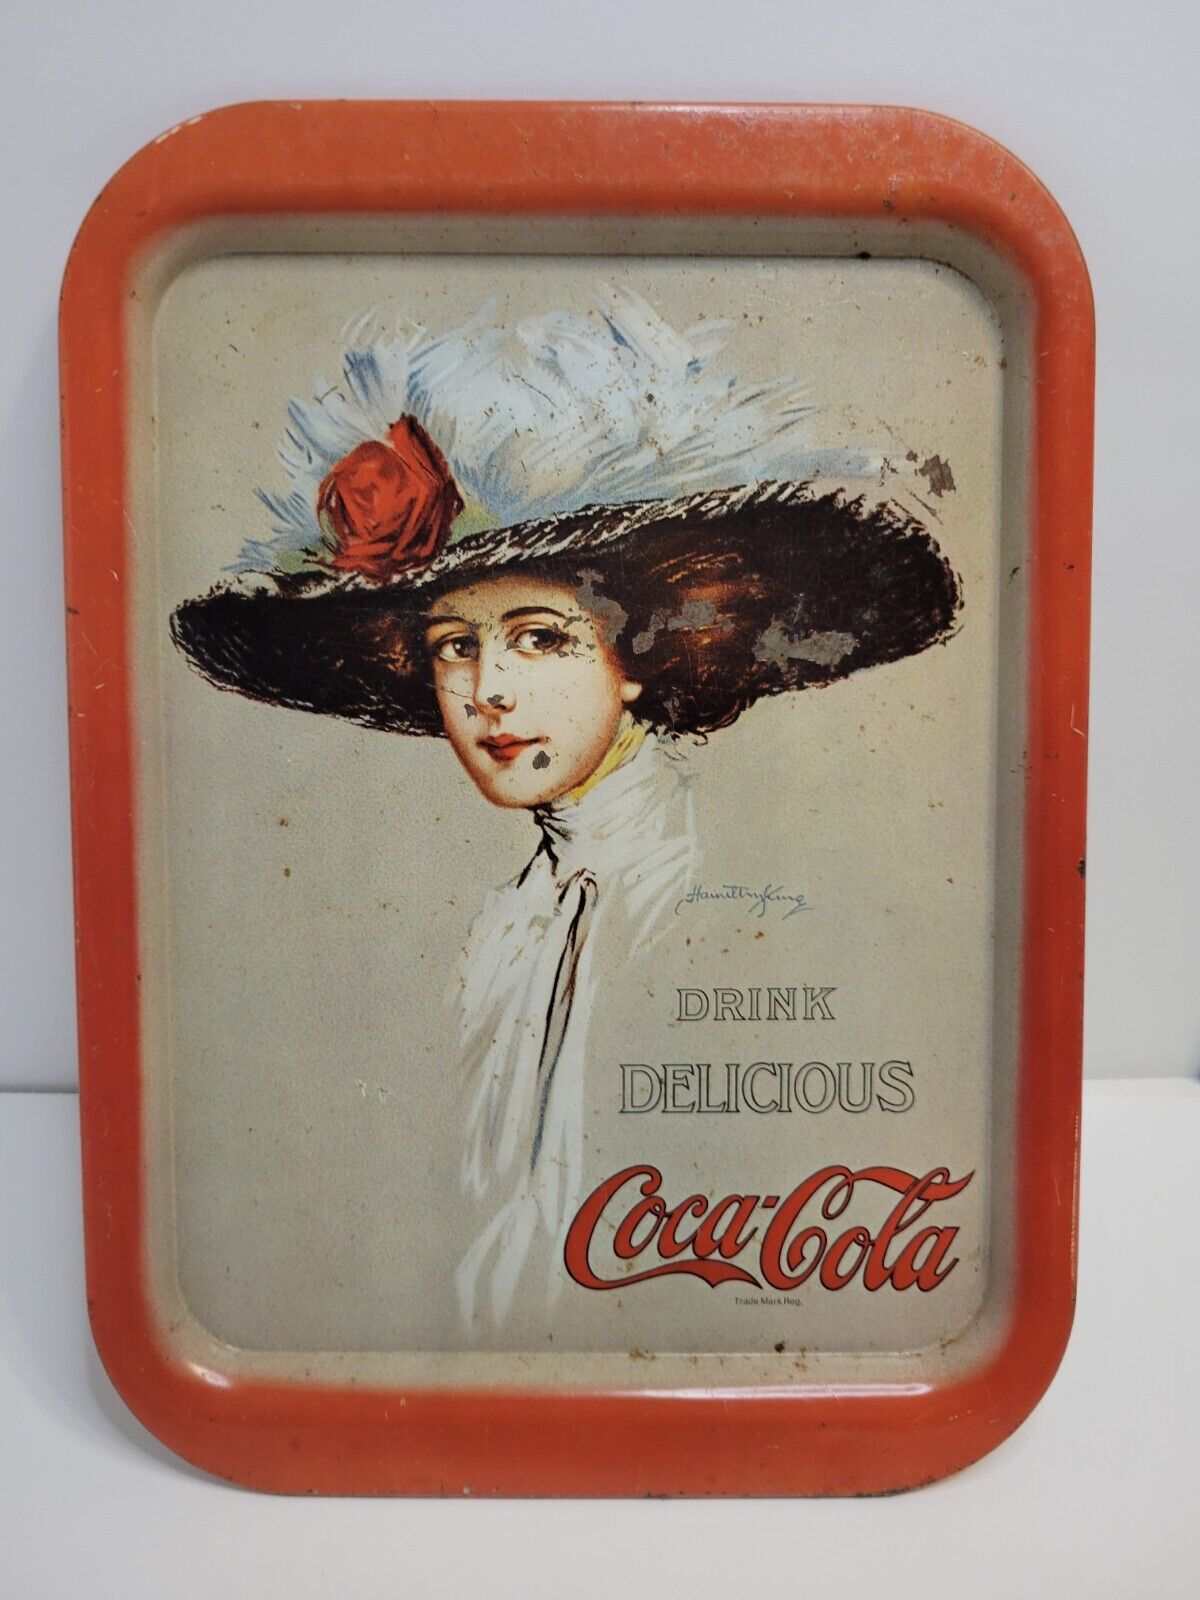 Vintage Coca-Cola Metal Serving Tray Hamilton King Girl Drink Delicious Coke